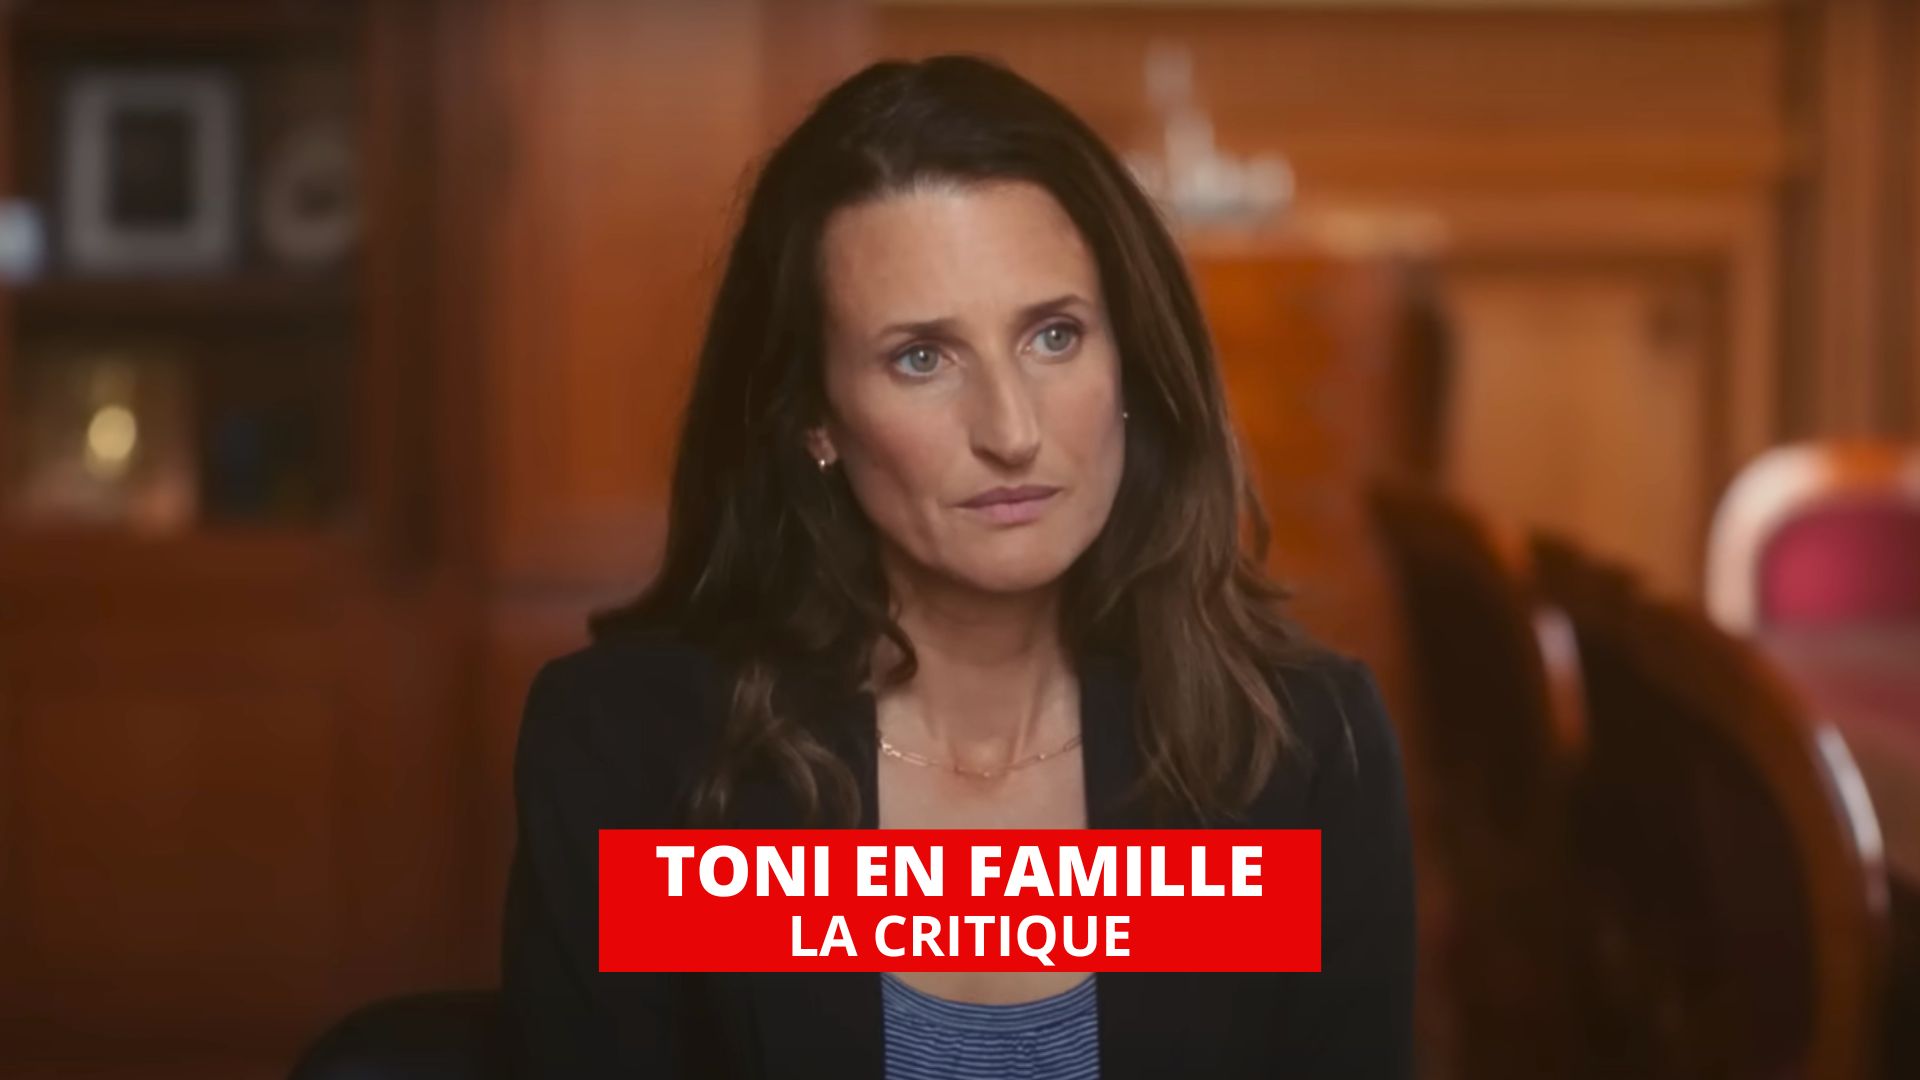 Toni en famille : Camille Cottin touchante en mère de famille